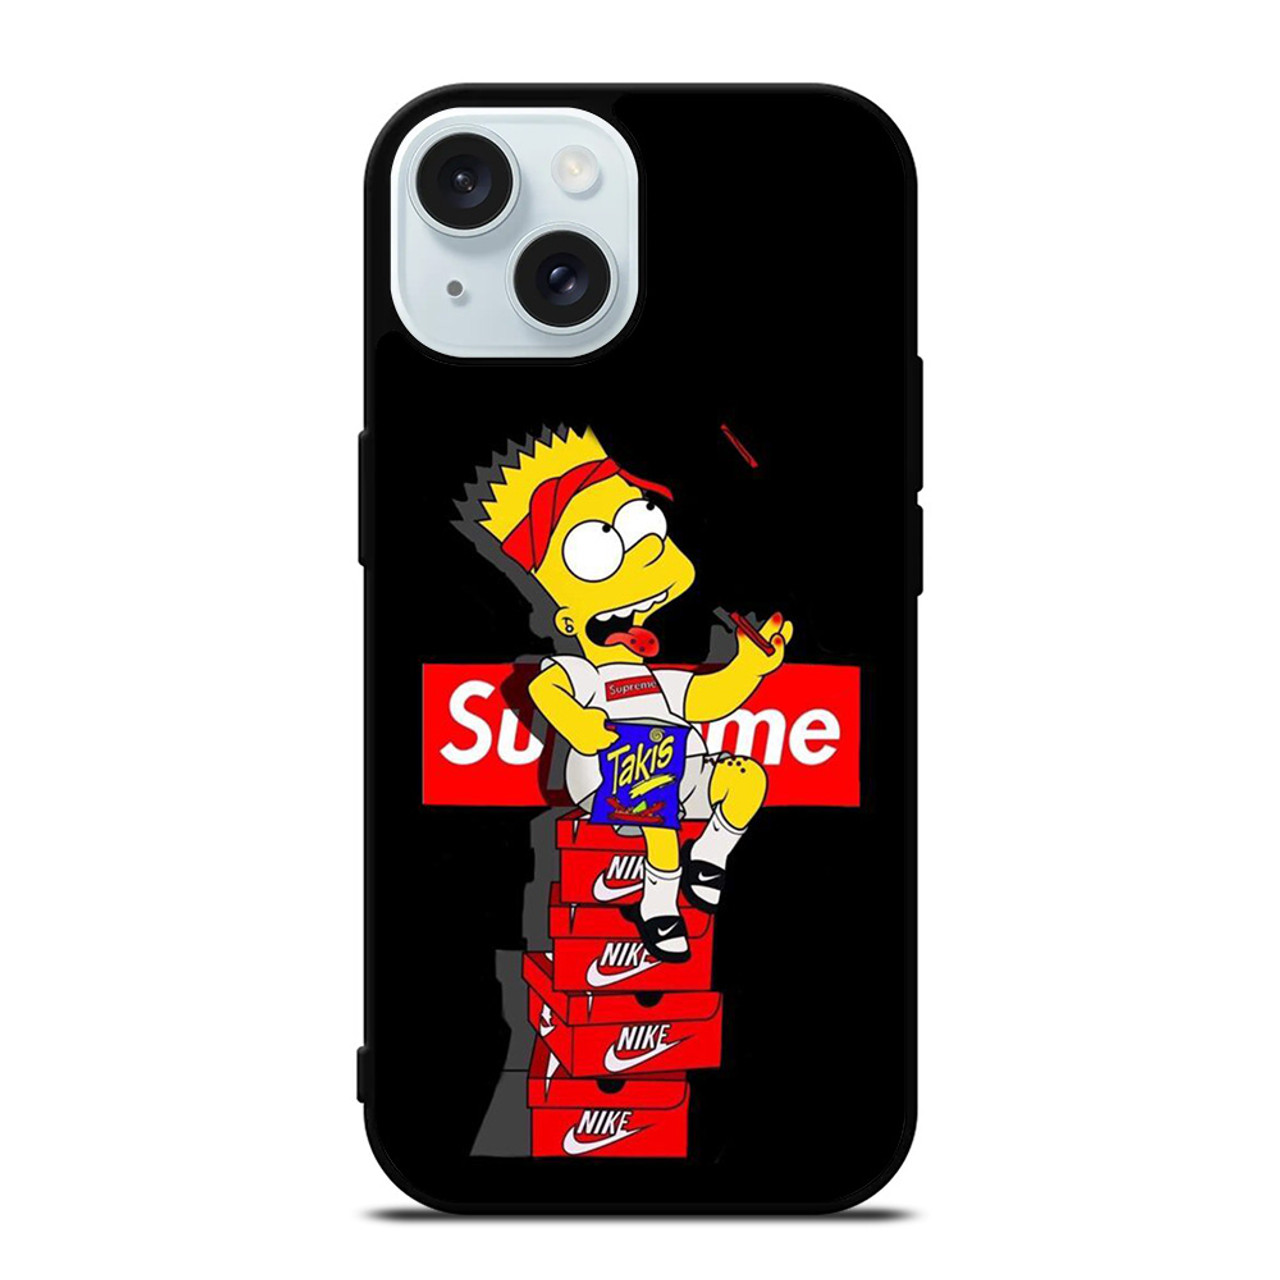 Nike Simpsons iPhone 8 Plus Case